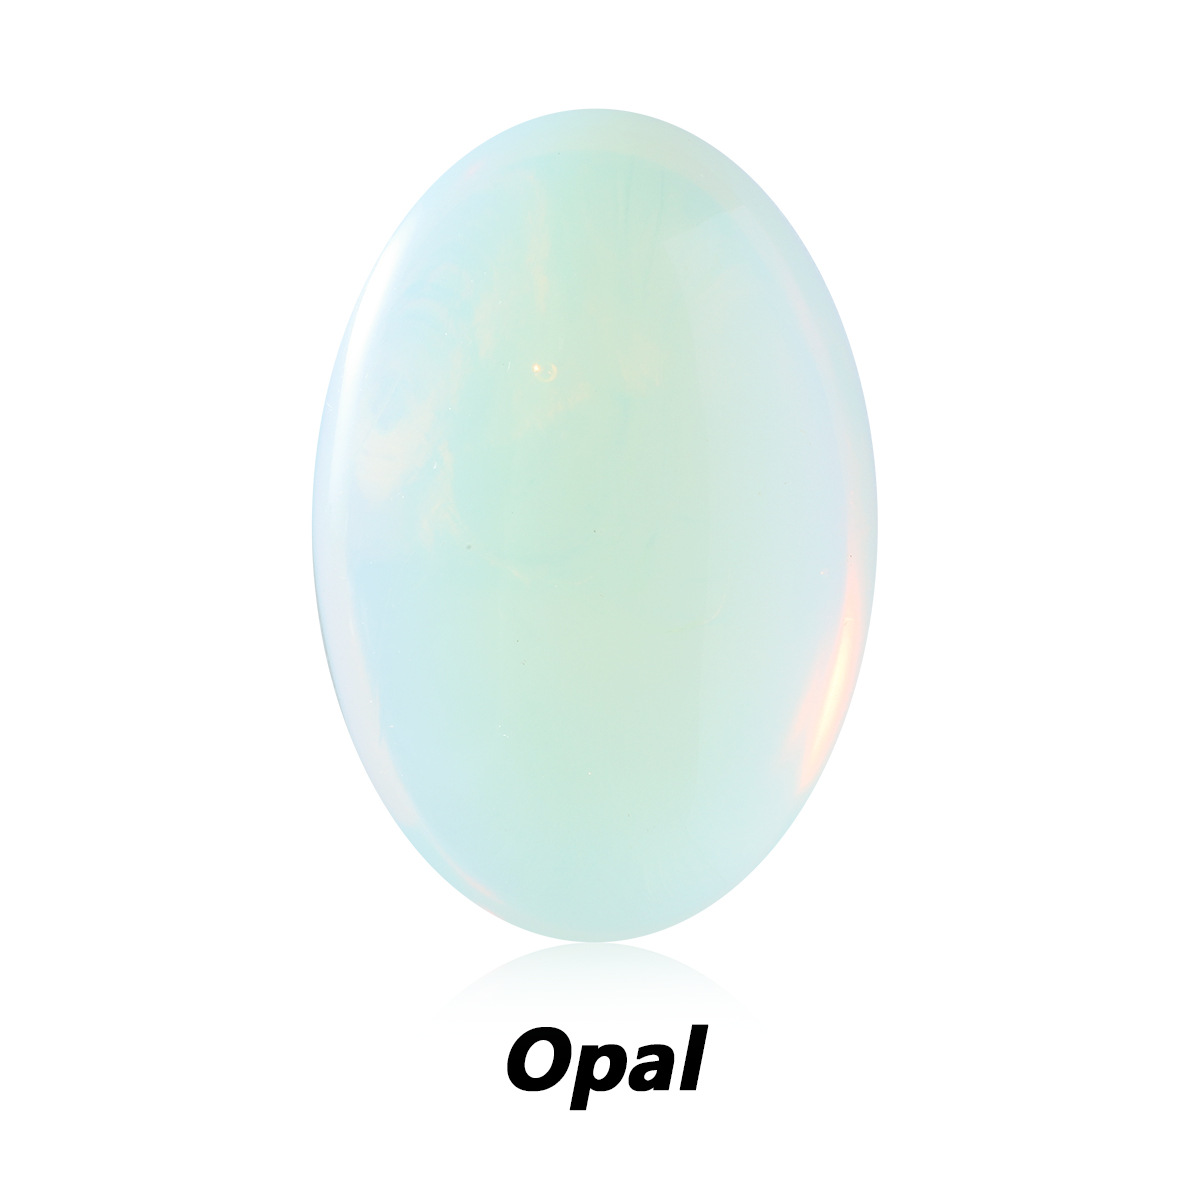 6 sea opal